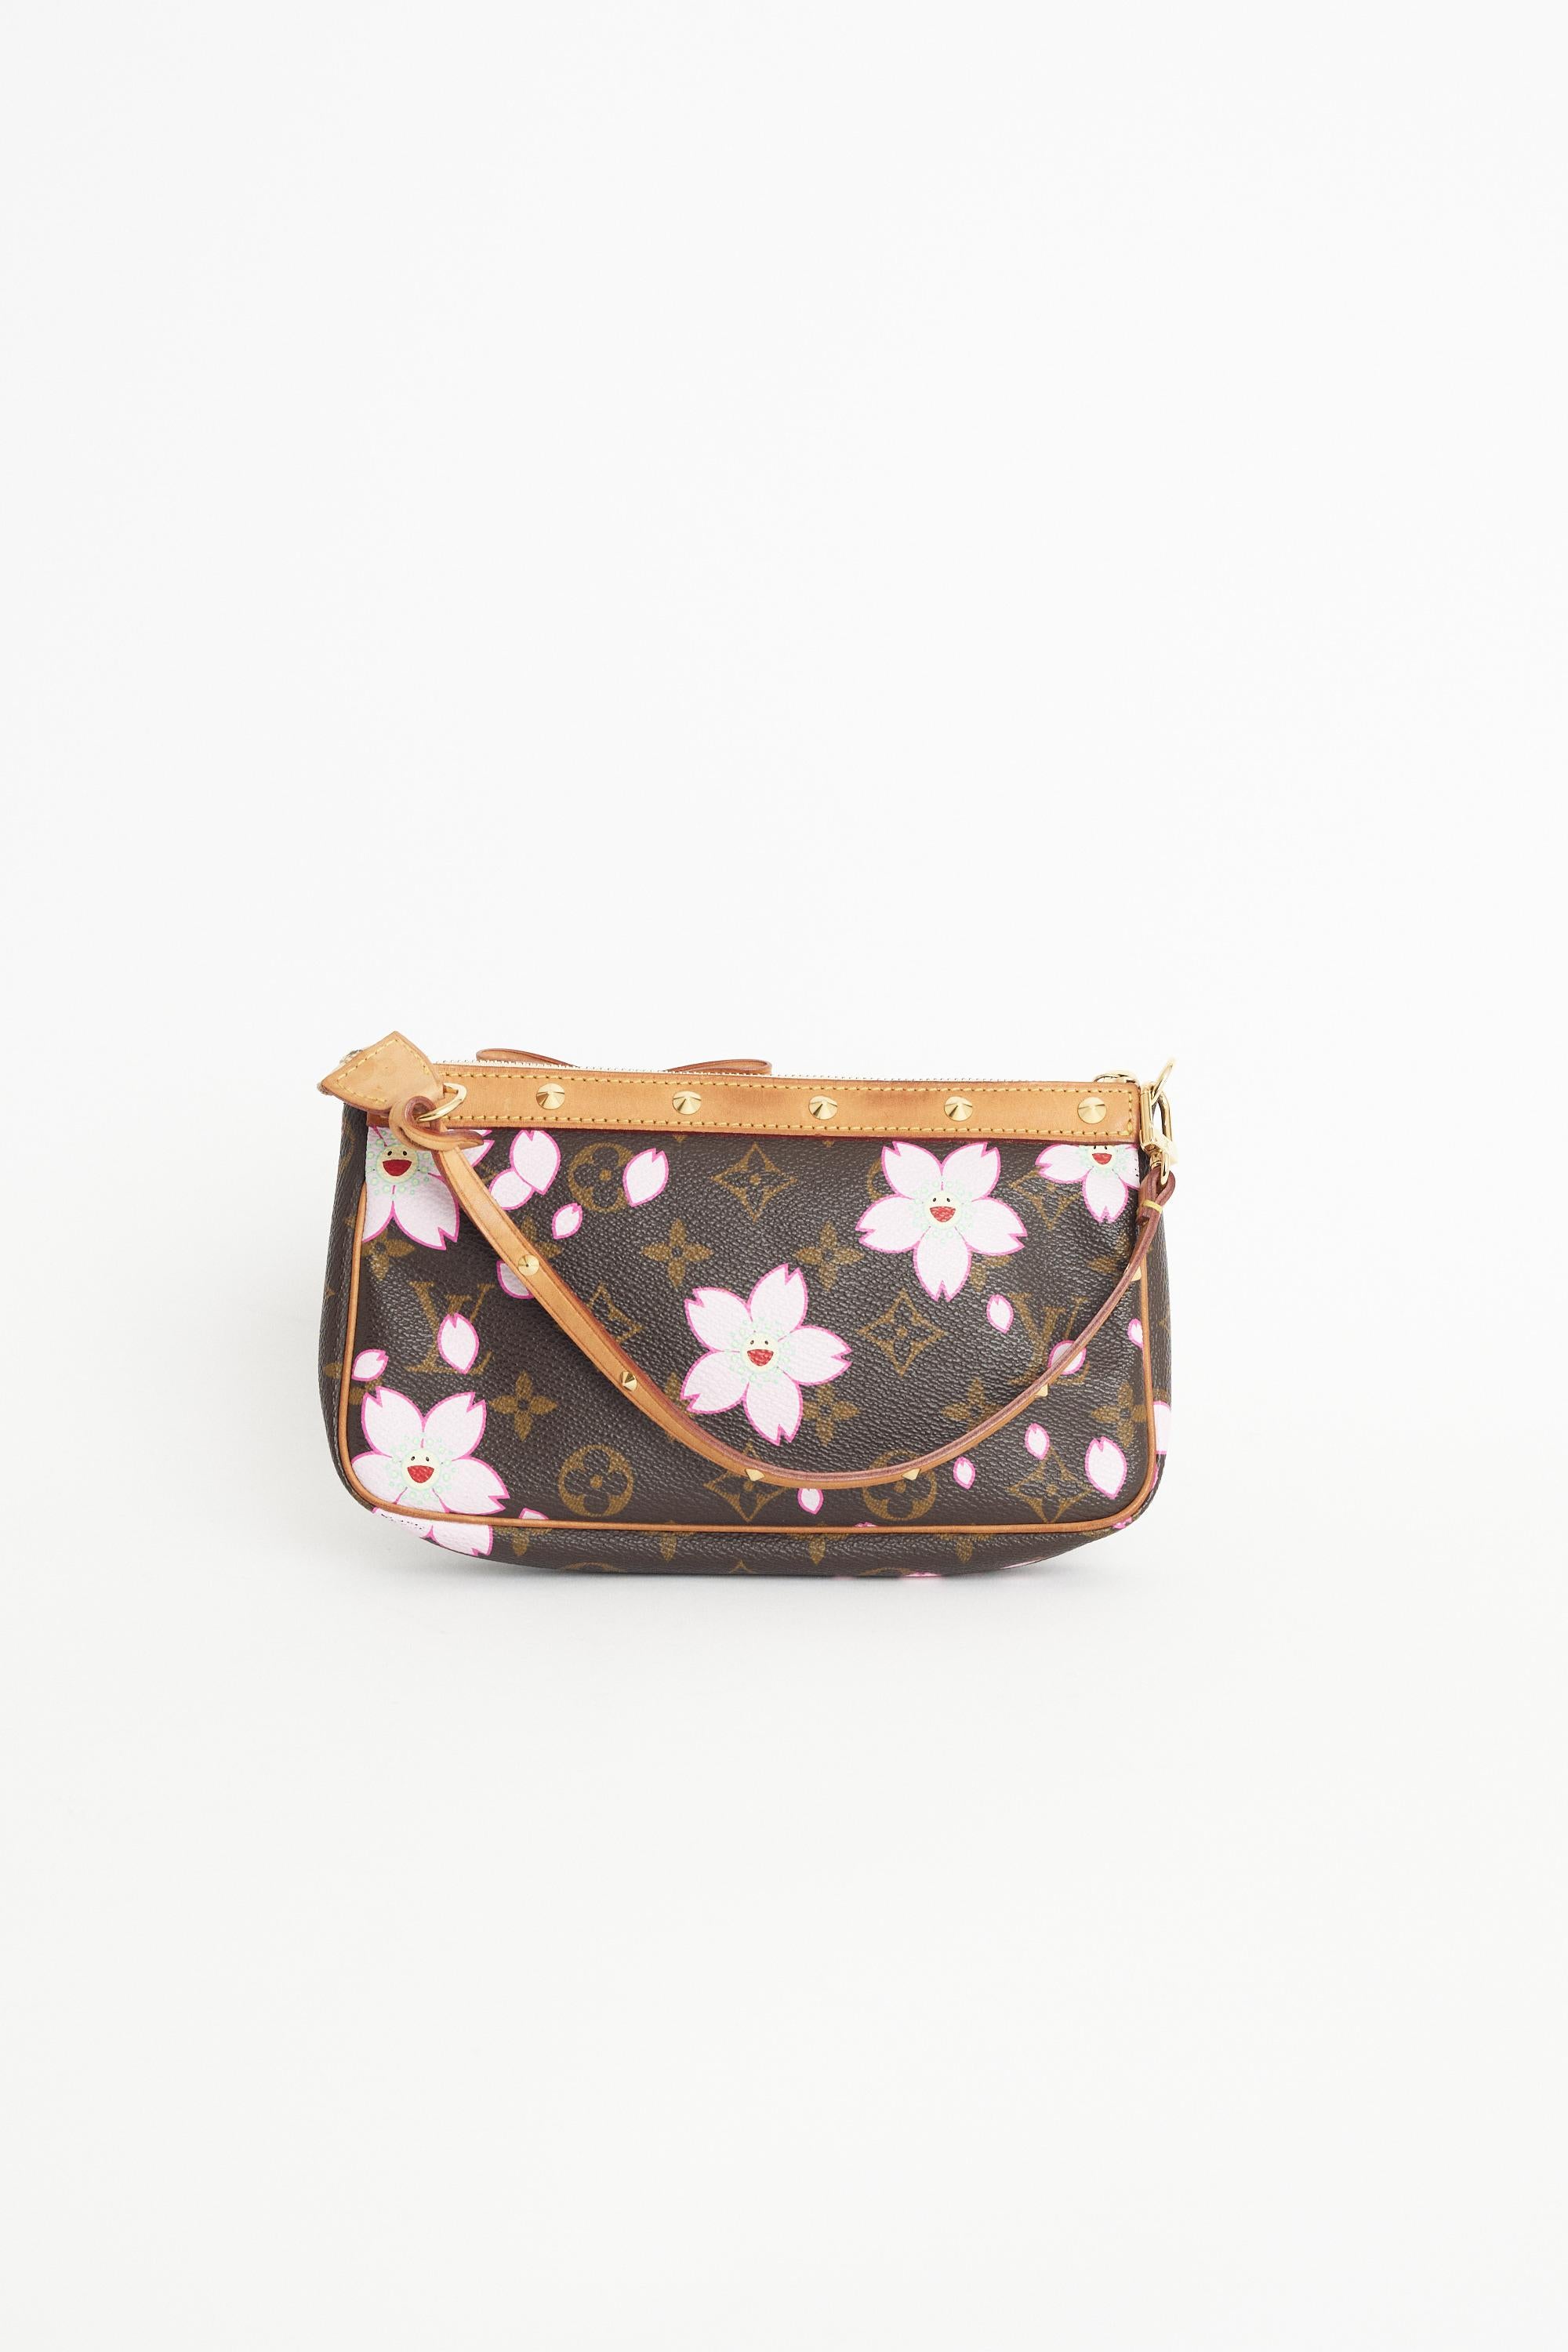 Louis Vuitton Cherry Blossom Takashi Murakami Sakura Pouch Bag Pochette Nice